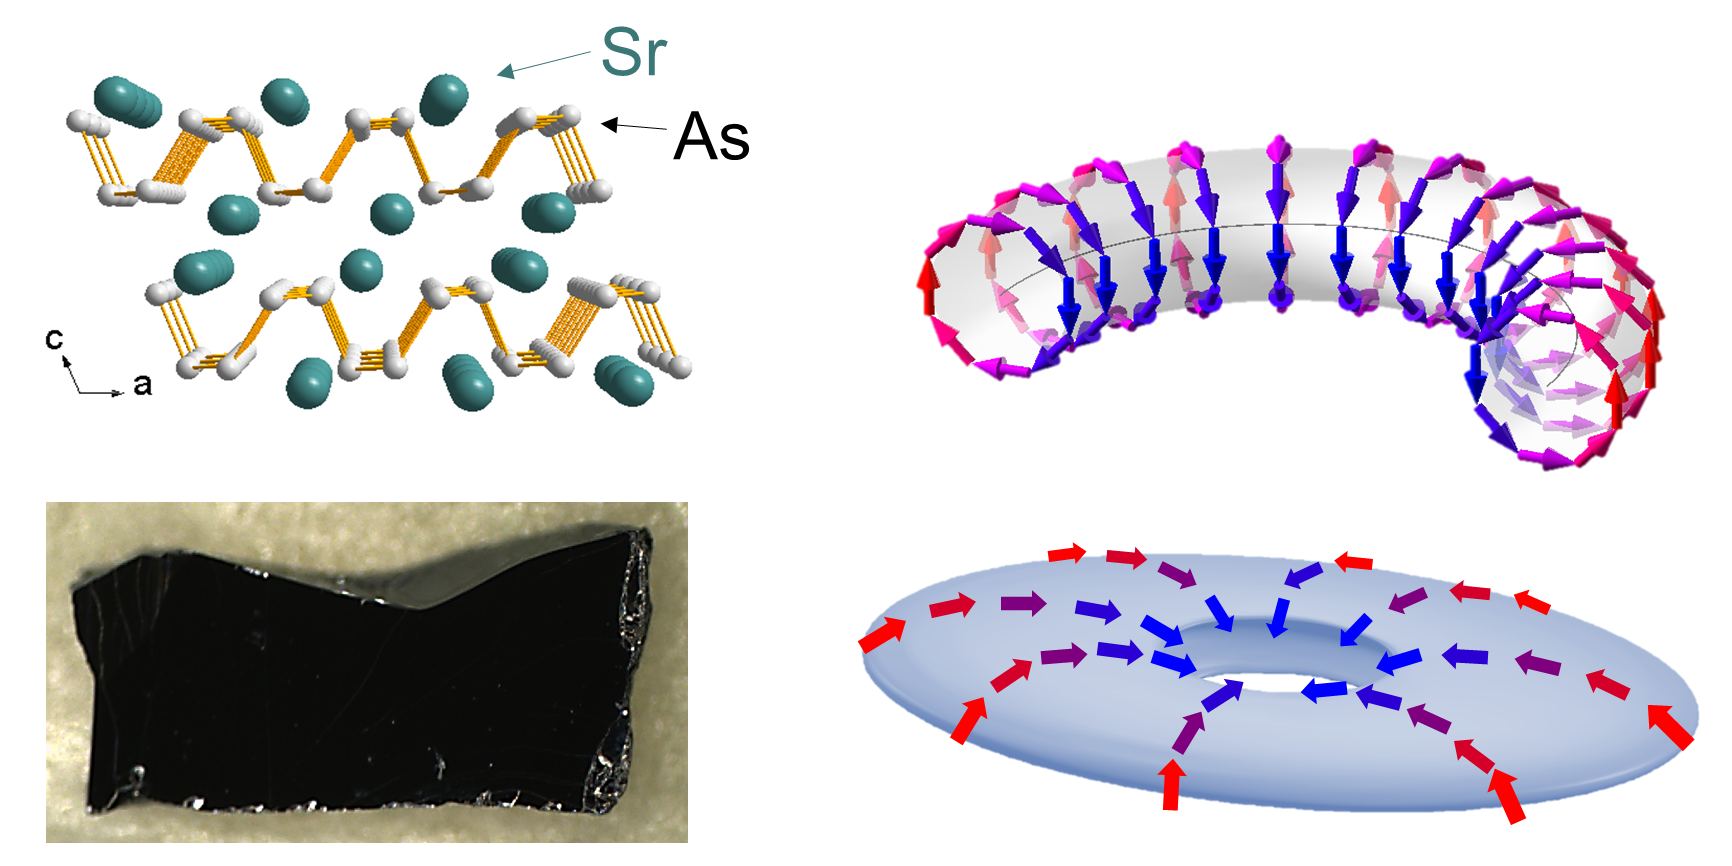 새로운 위상물질 스트론튬-비소 화합물(SrAs3) 전자구조